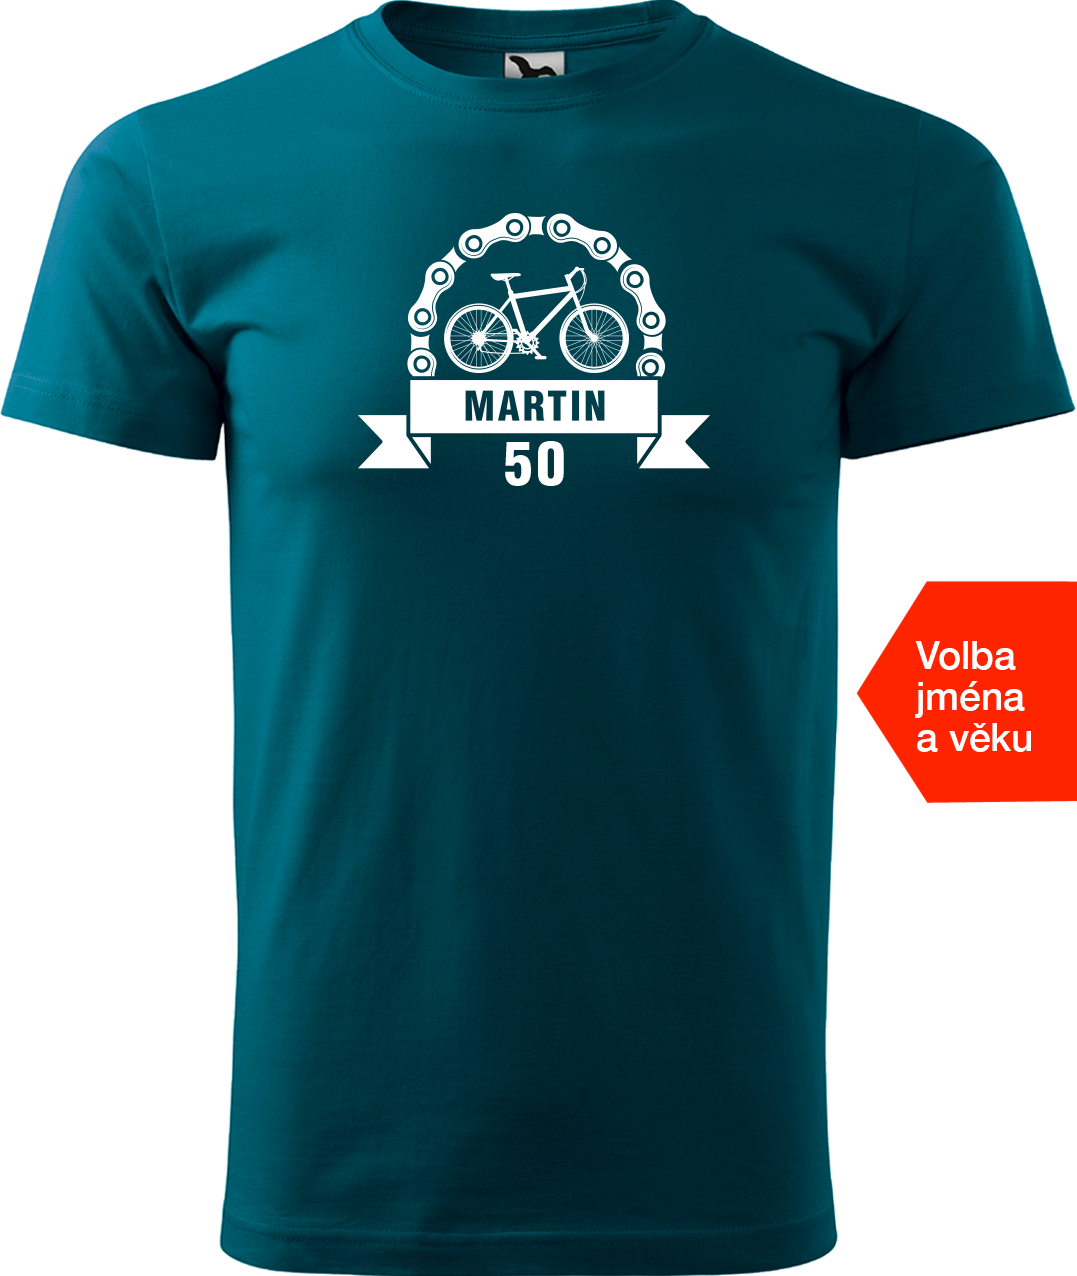 Pánské tričko pro cyklistu se jménem a věkem - Blahopřání Velikost: XL, Barva: Petrolejová (93)